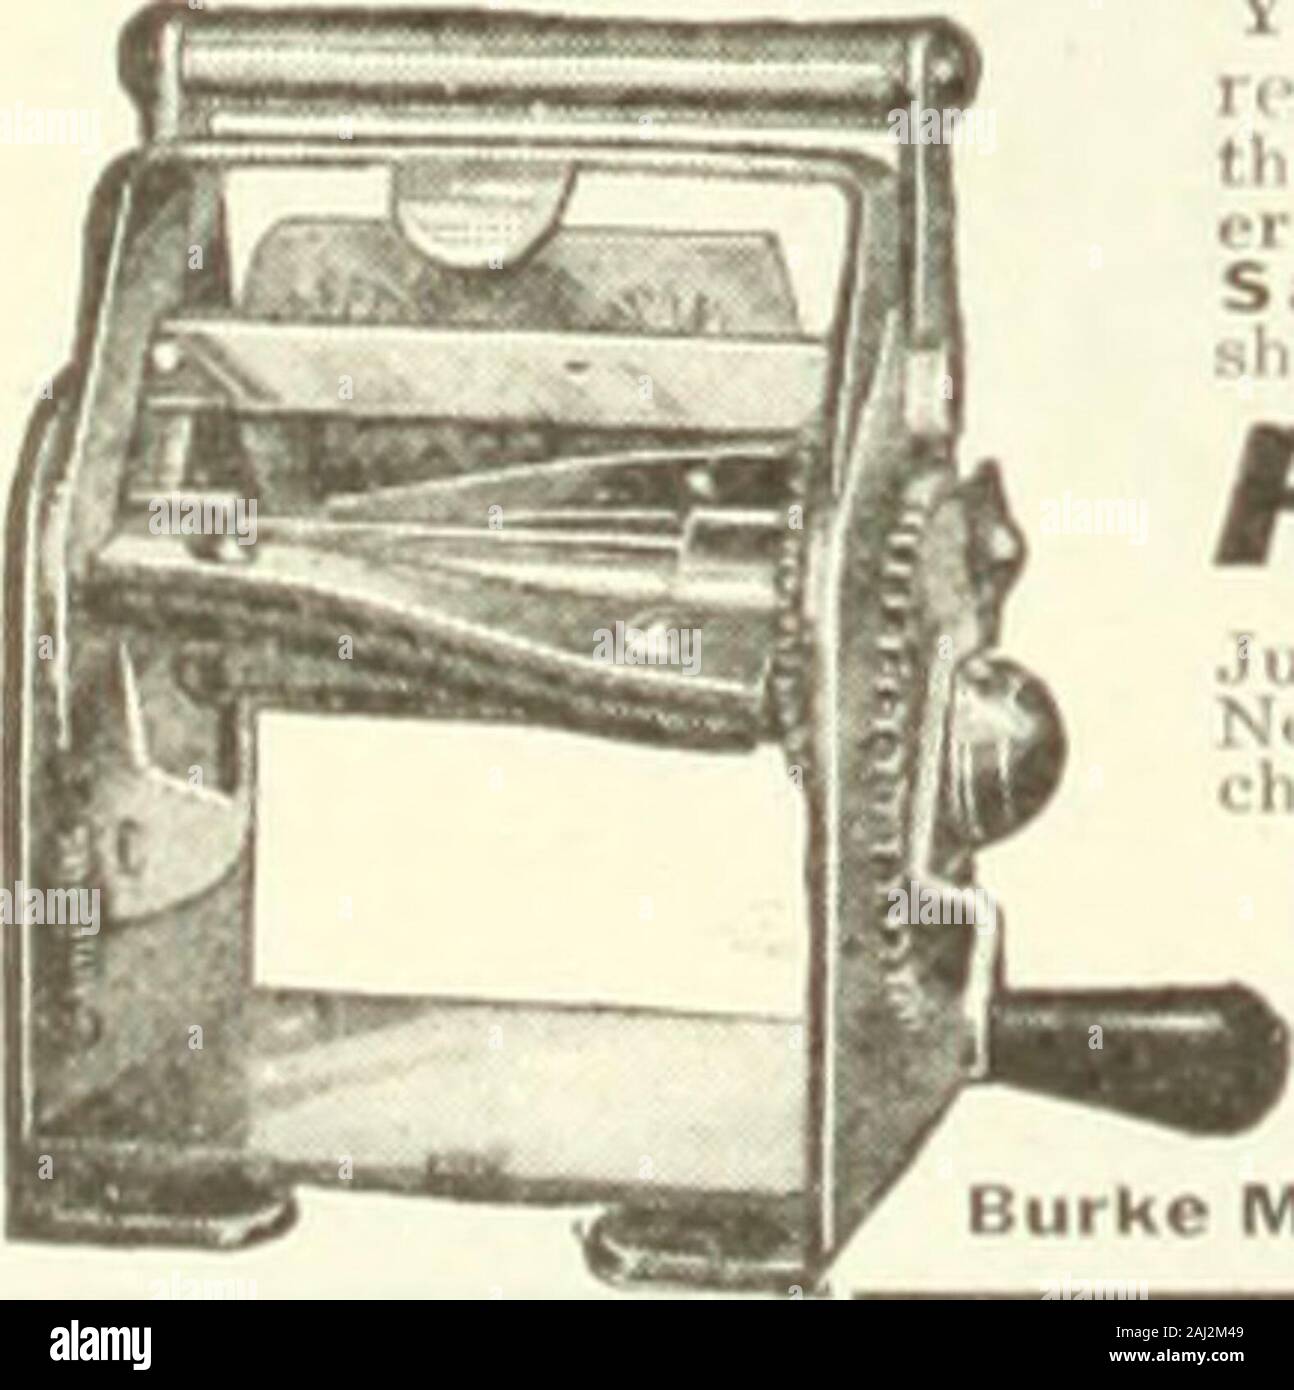 El Literary Digest . Cintas para máquinas de escribir encerado son  superiores y distintivo; desgaste ionjrer. No llene el tipo o dryout.  Guardar mediante compra directa. Precio. 3 por $1.50 o 12